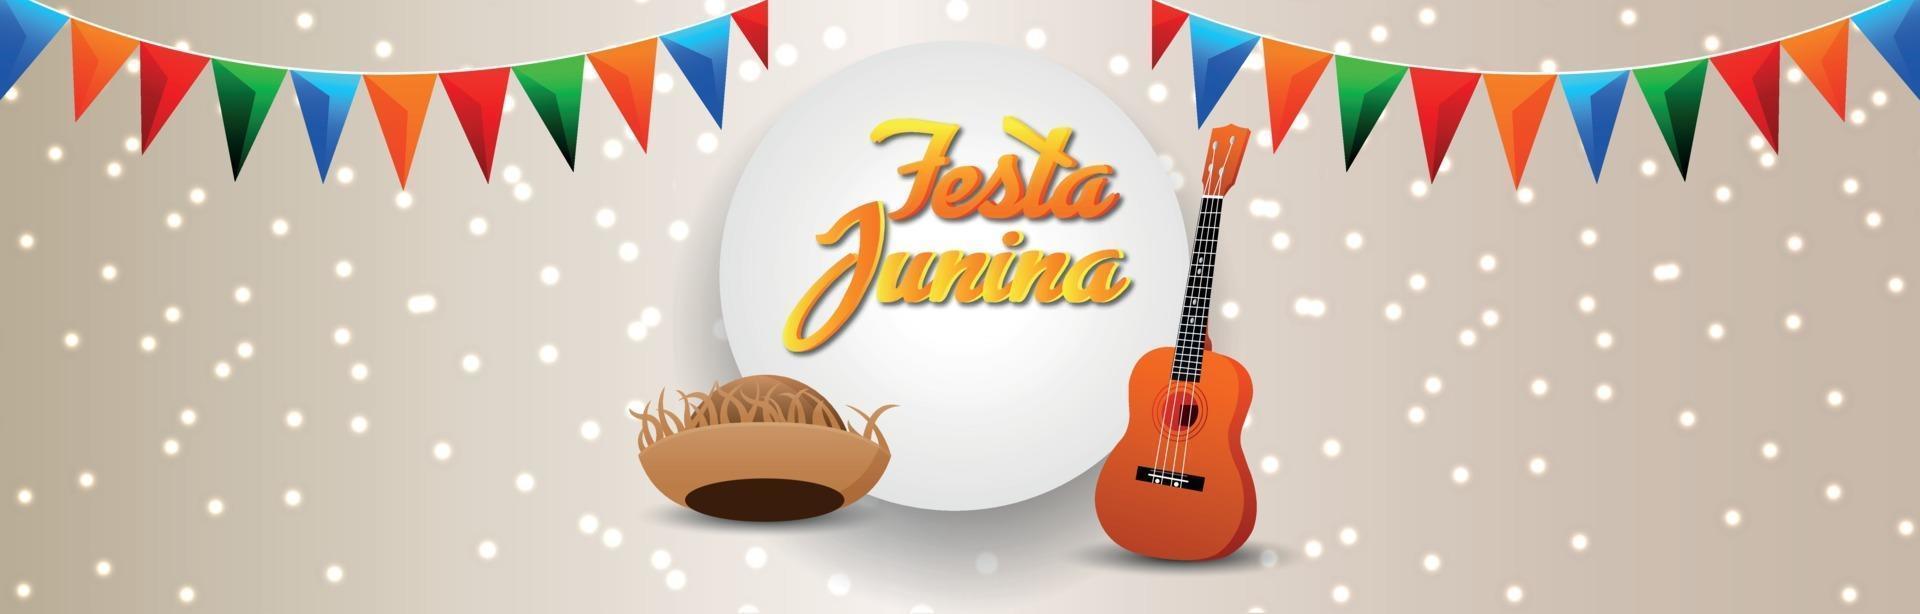 Banner ou cabeçalho de convite festa junina com balde de pipoca criativo e bandeira de festa colorida vetor